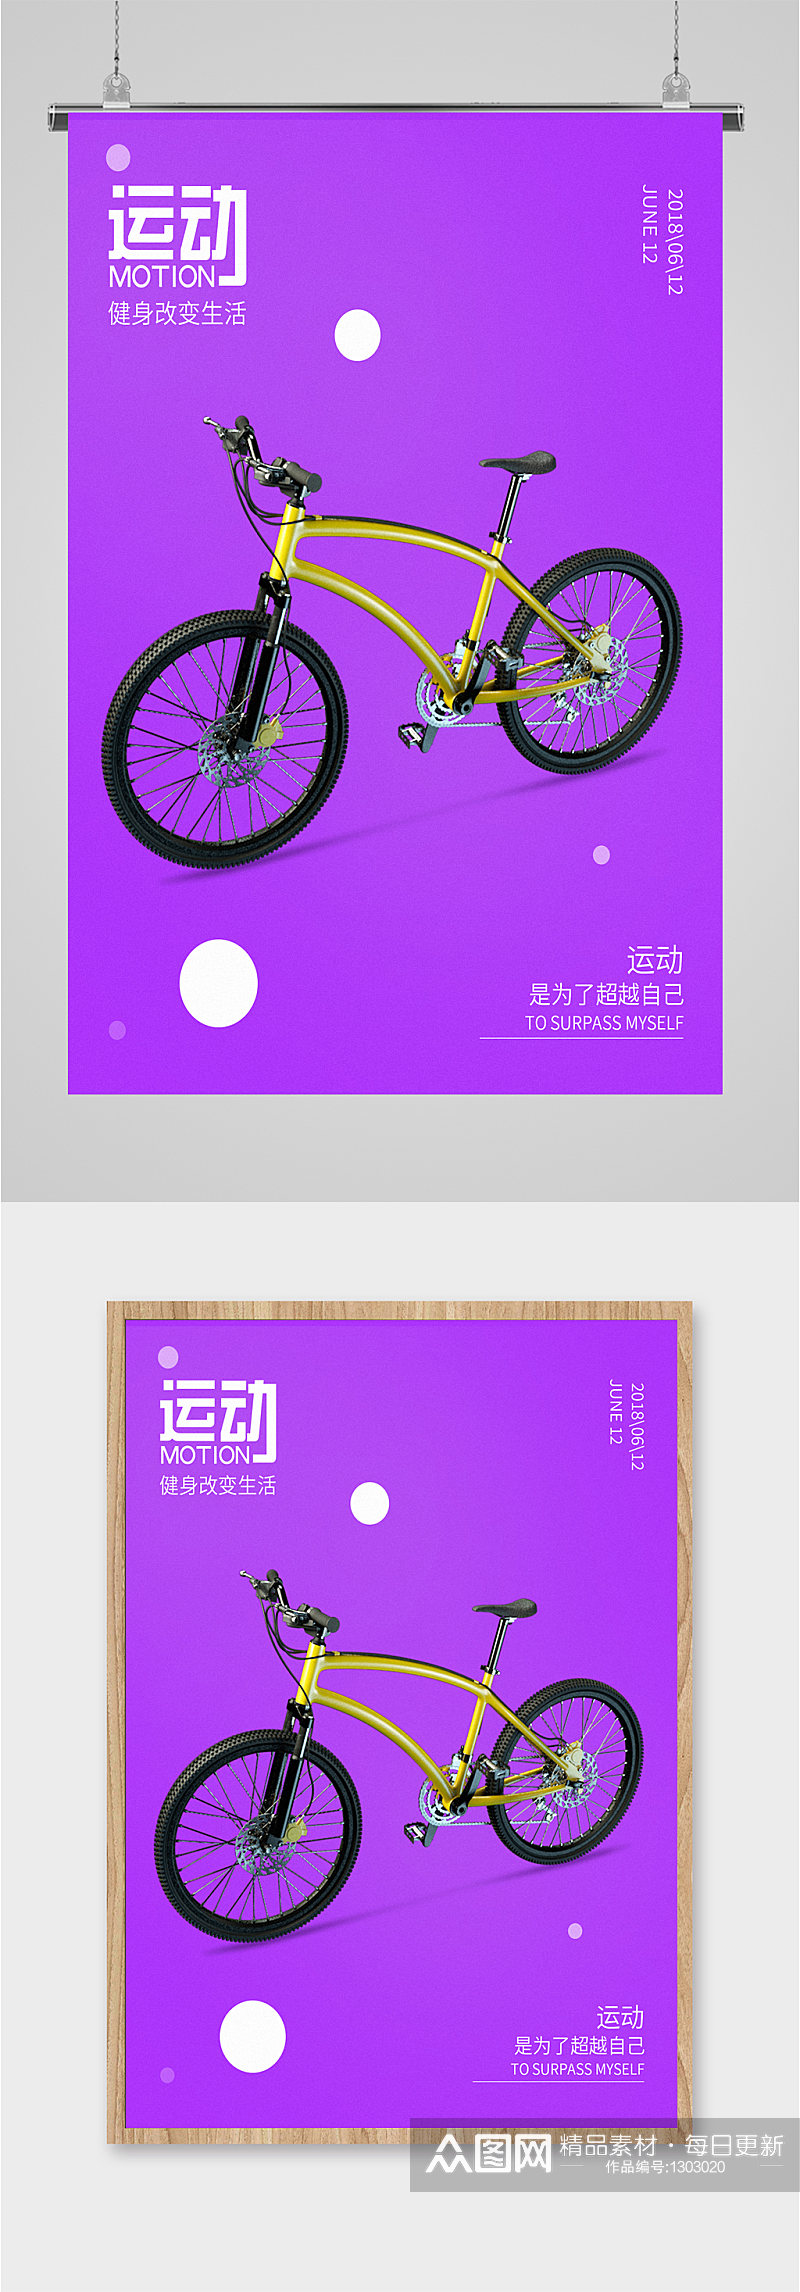 自行车骑行运动海报素材